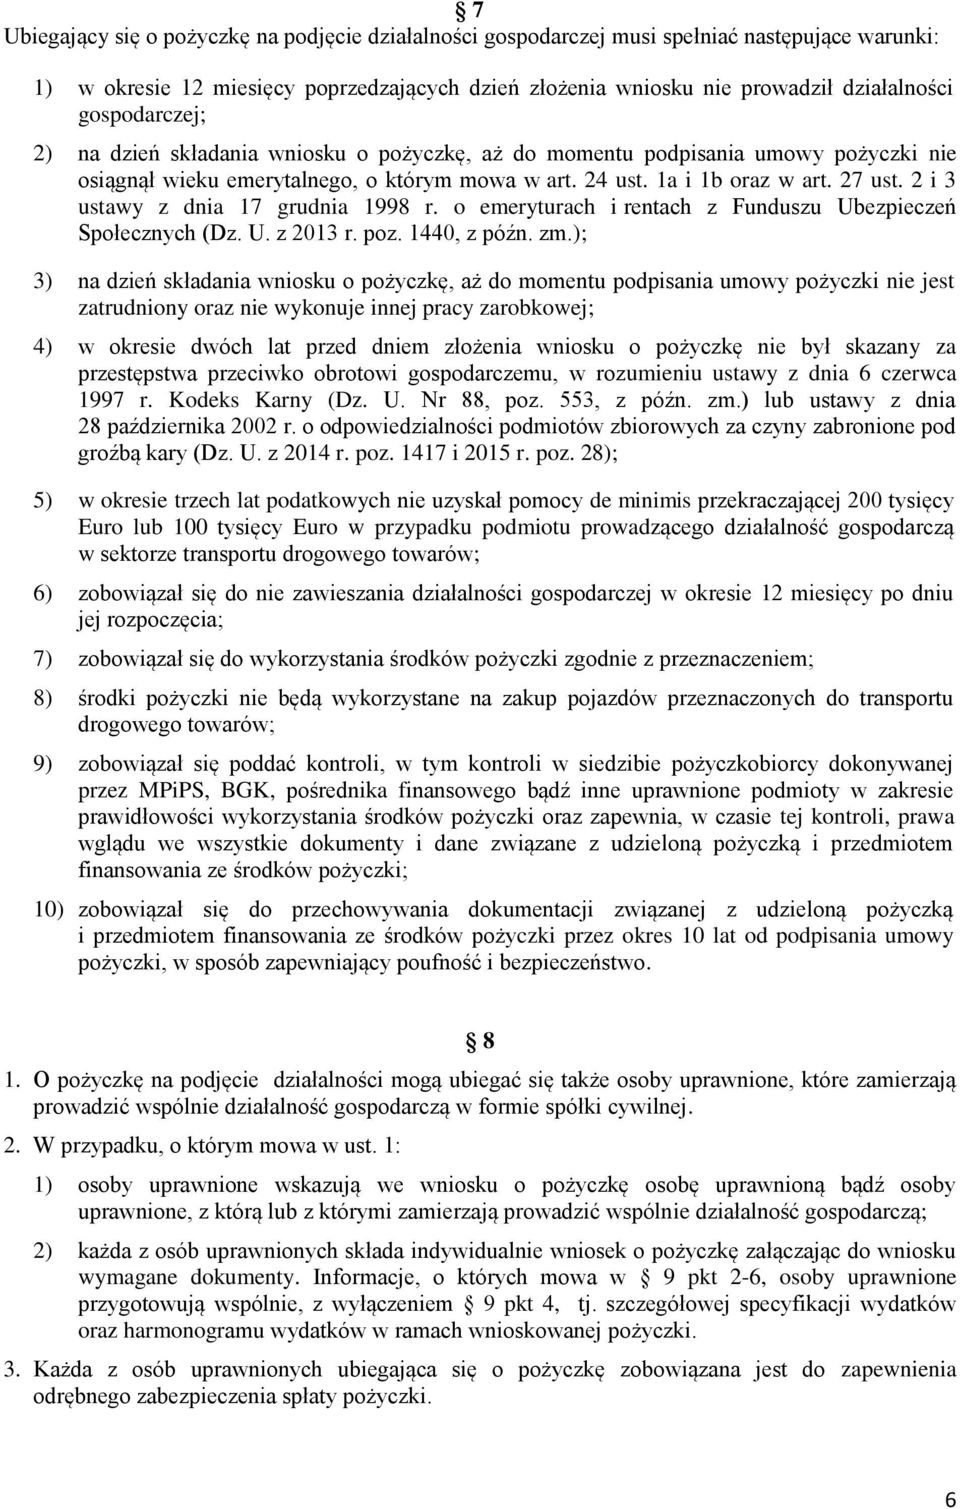 2 i 3 ustawy z dnia 17 grudnia 1998 r. o emeryturach i rentach z Funduszu Ubezpieczeń Społecznych (Dz. U. z 2013 r. poz. 1440, z późn. zm.